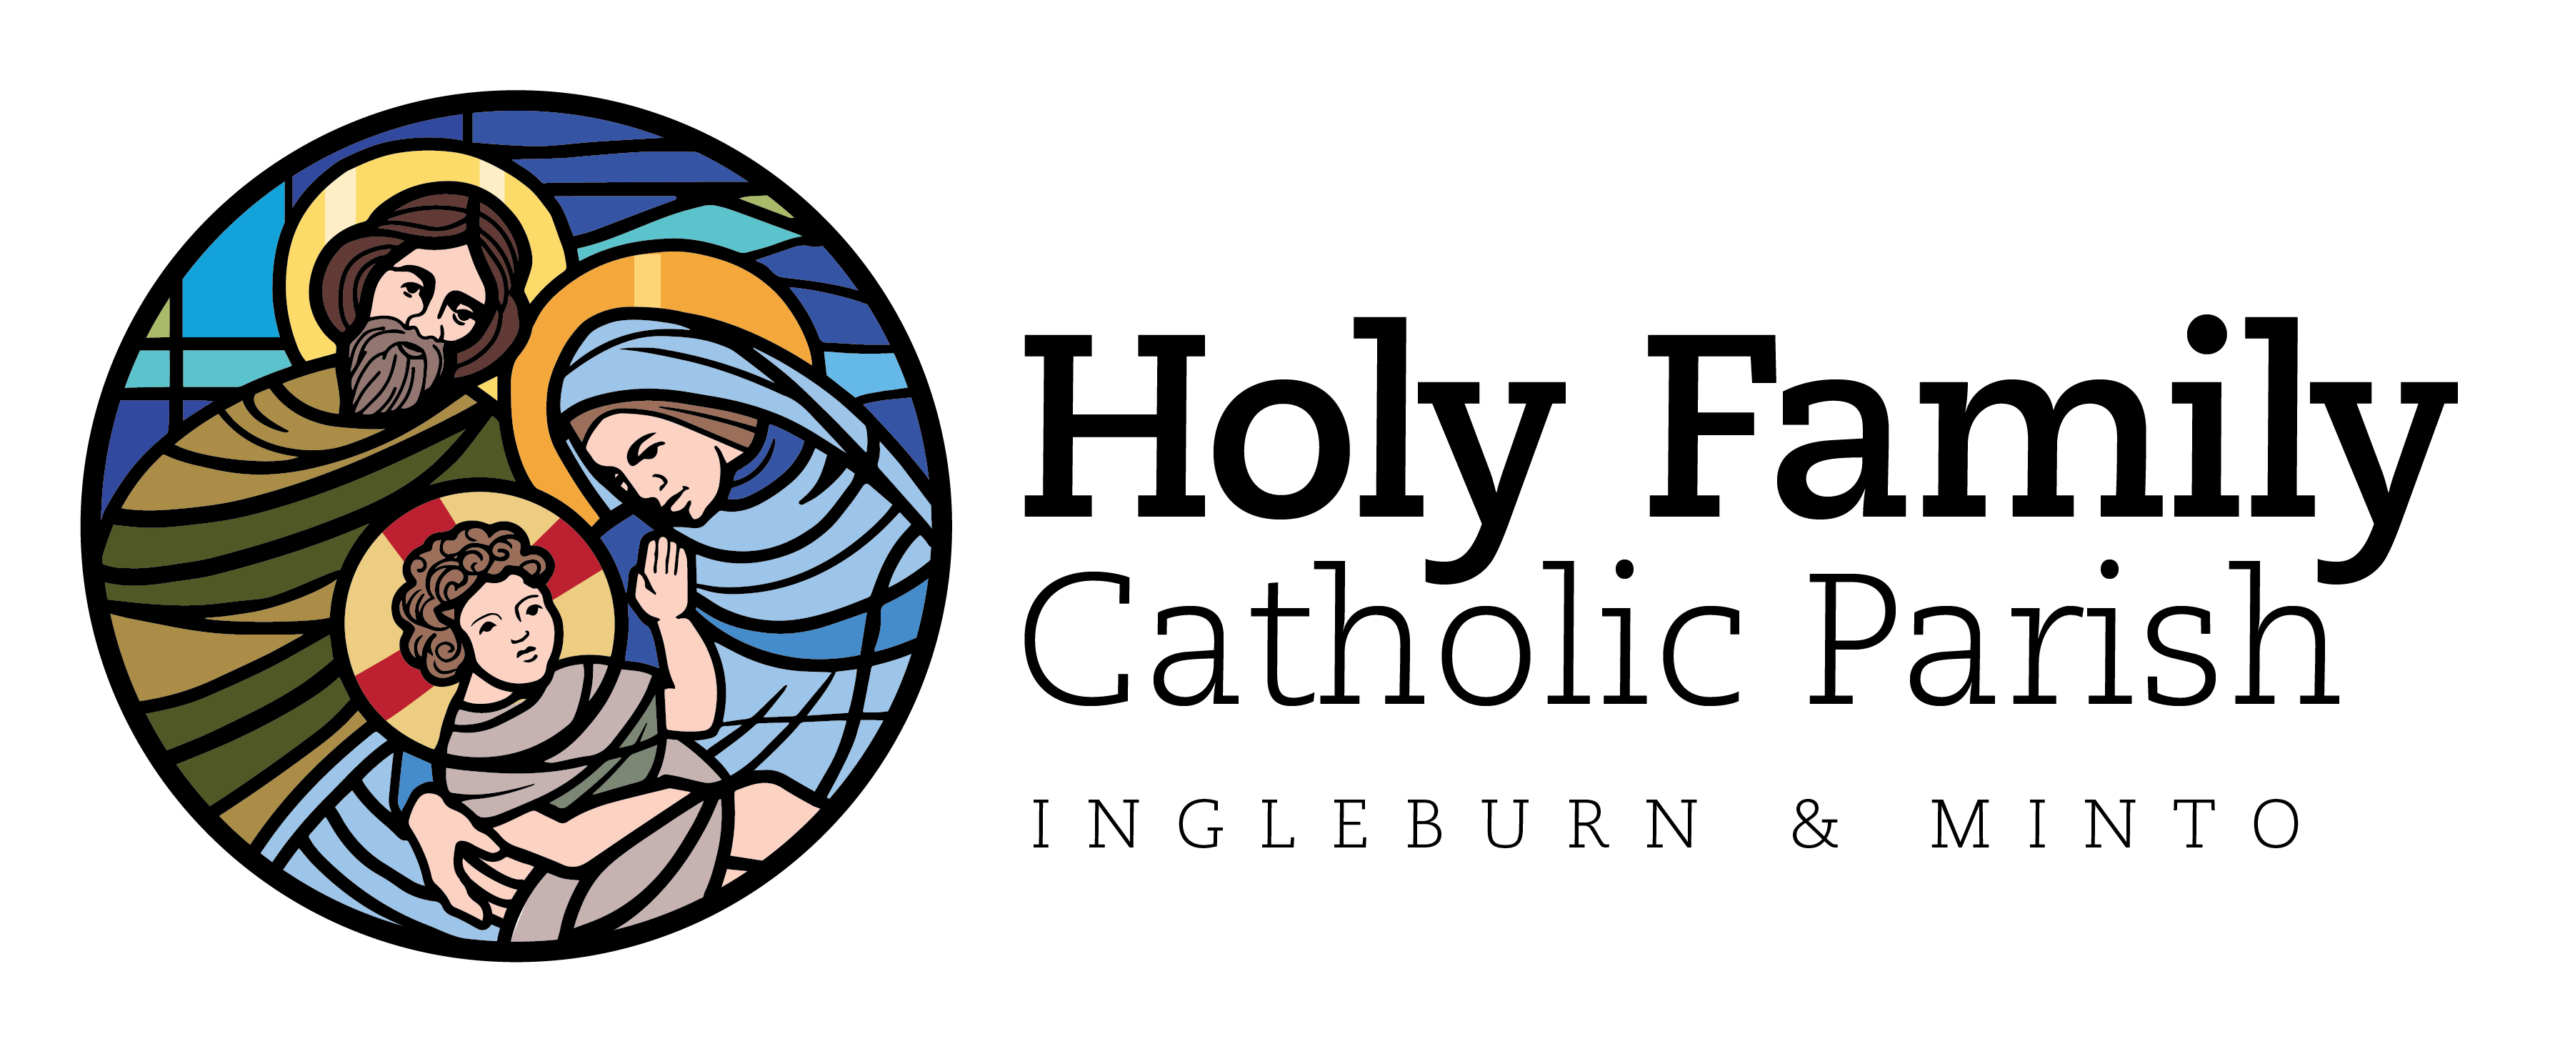 Holy Family Catholic Parish Ingleburn